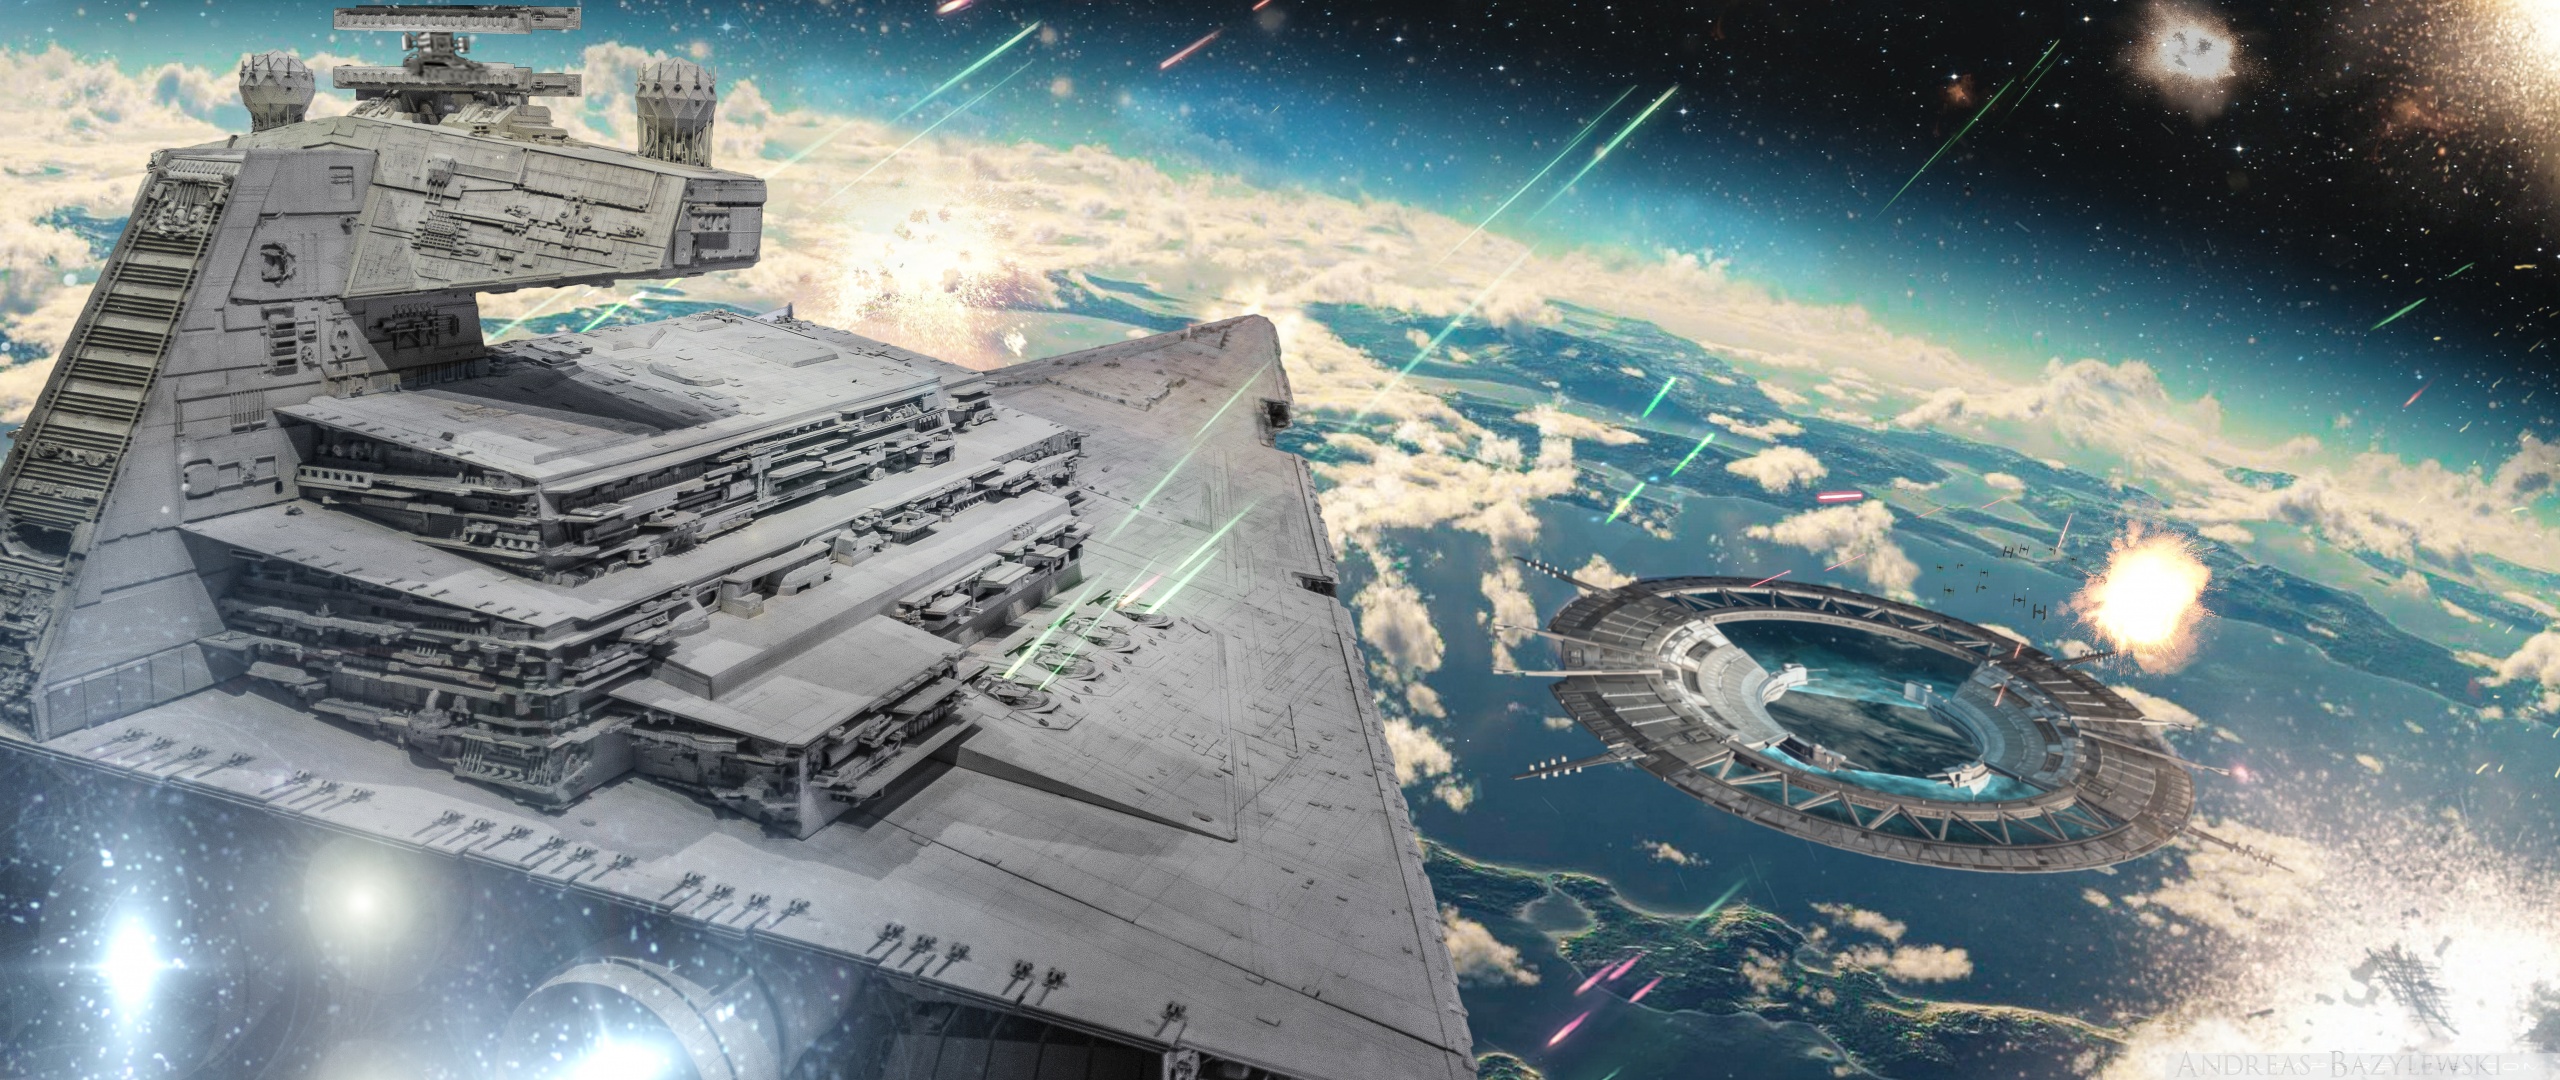 Ultrawide 21 - - Star Wars Imperial Battle , HD Wallpaper & Backgrounds